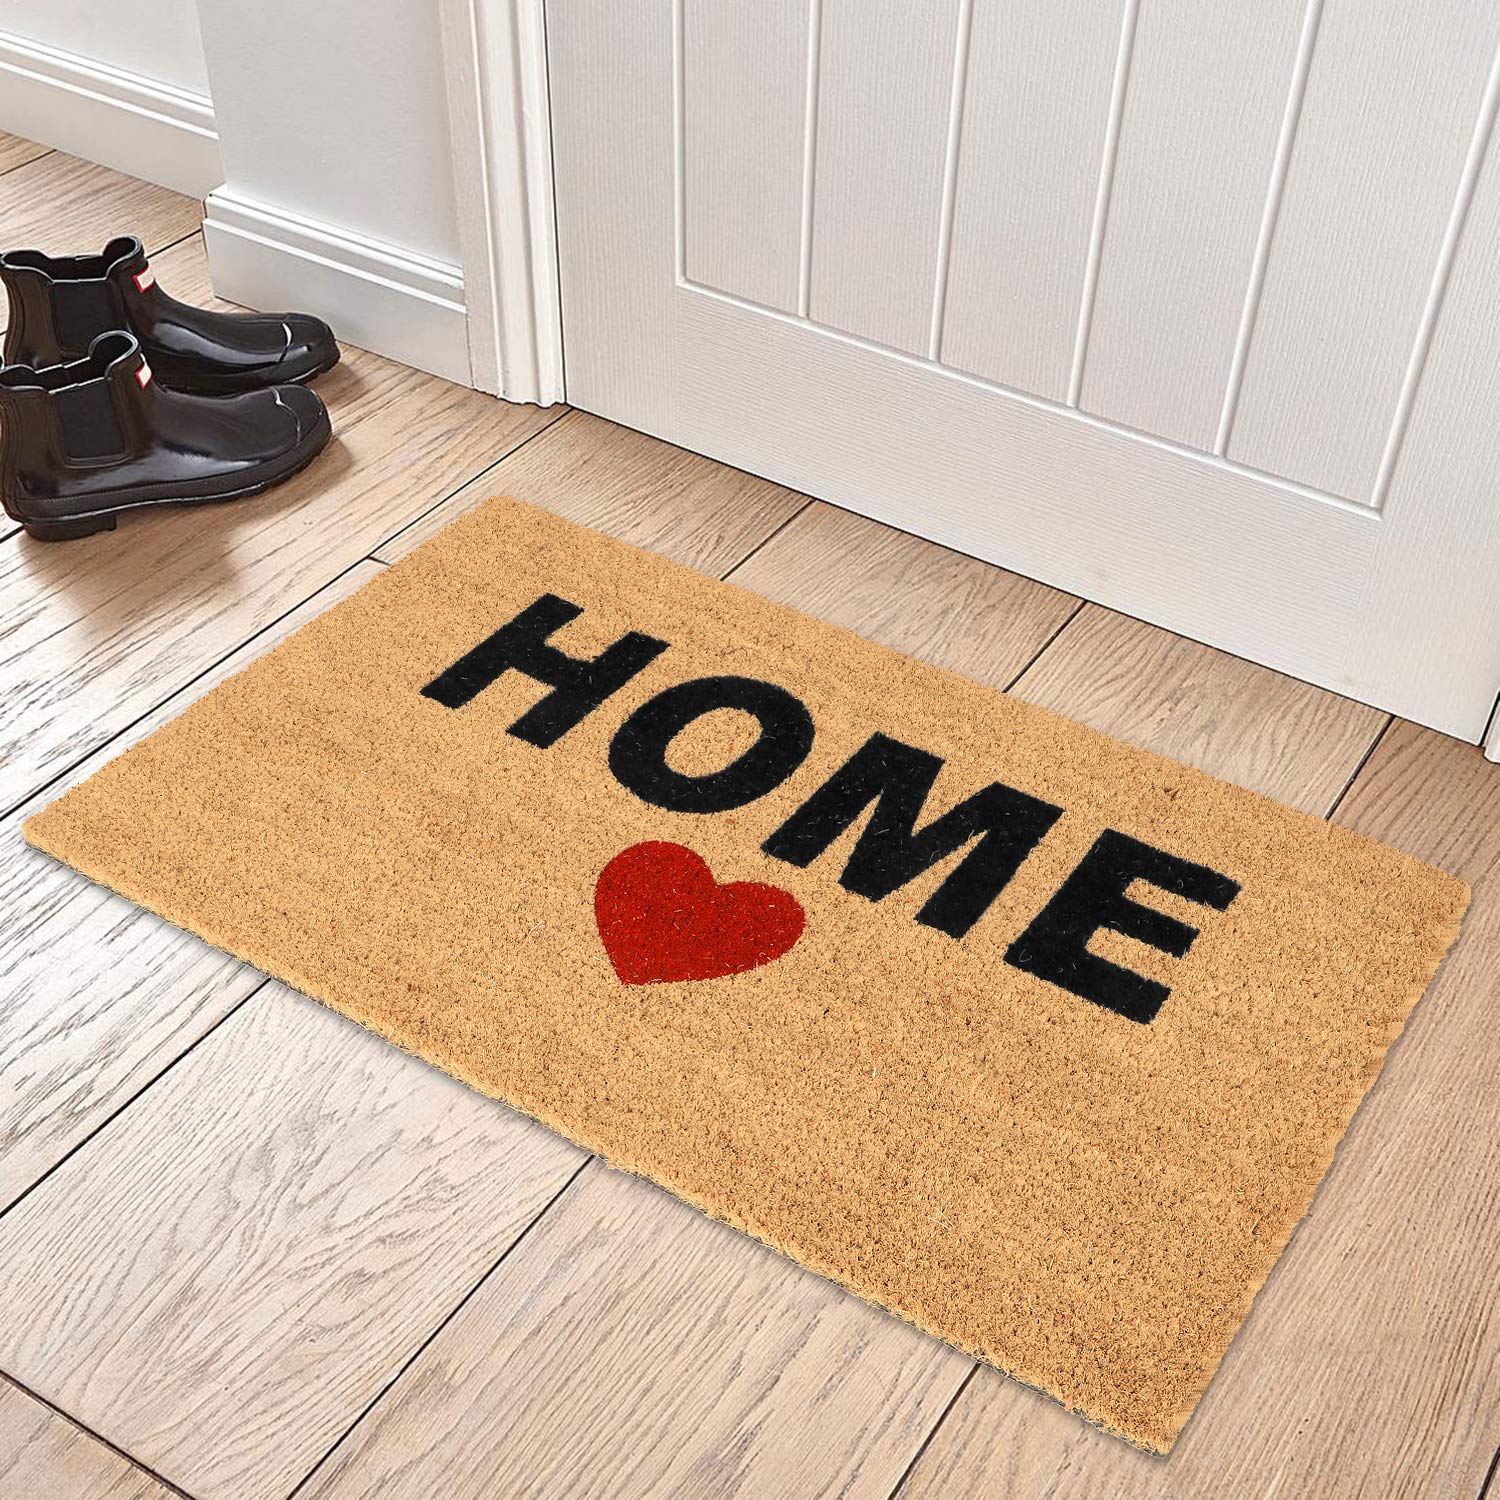 Welcome mat at front door